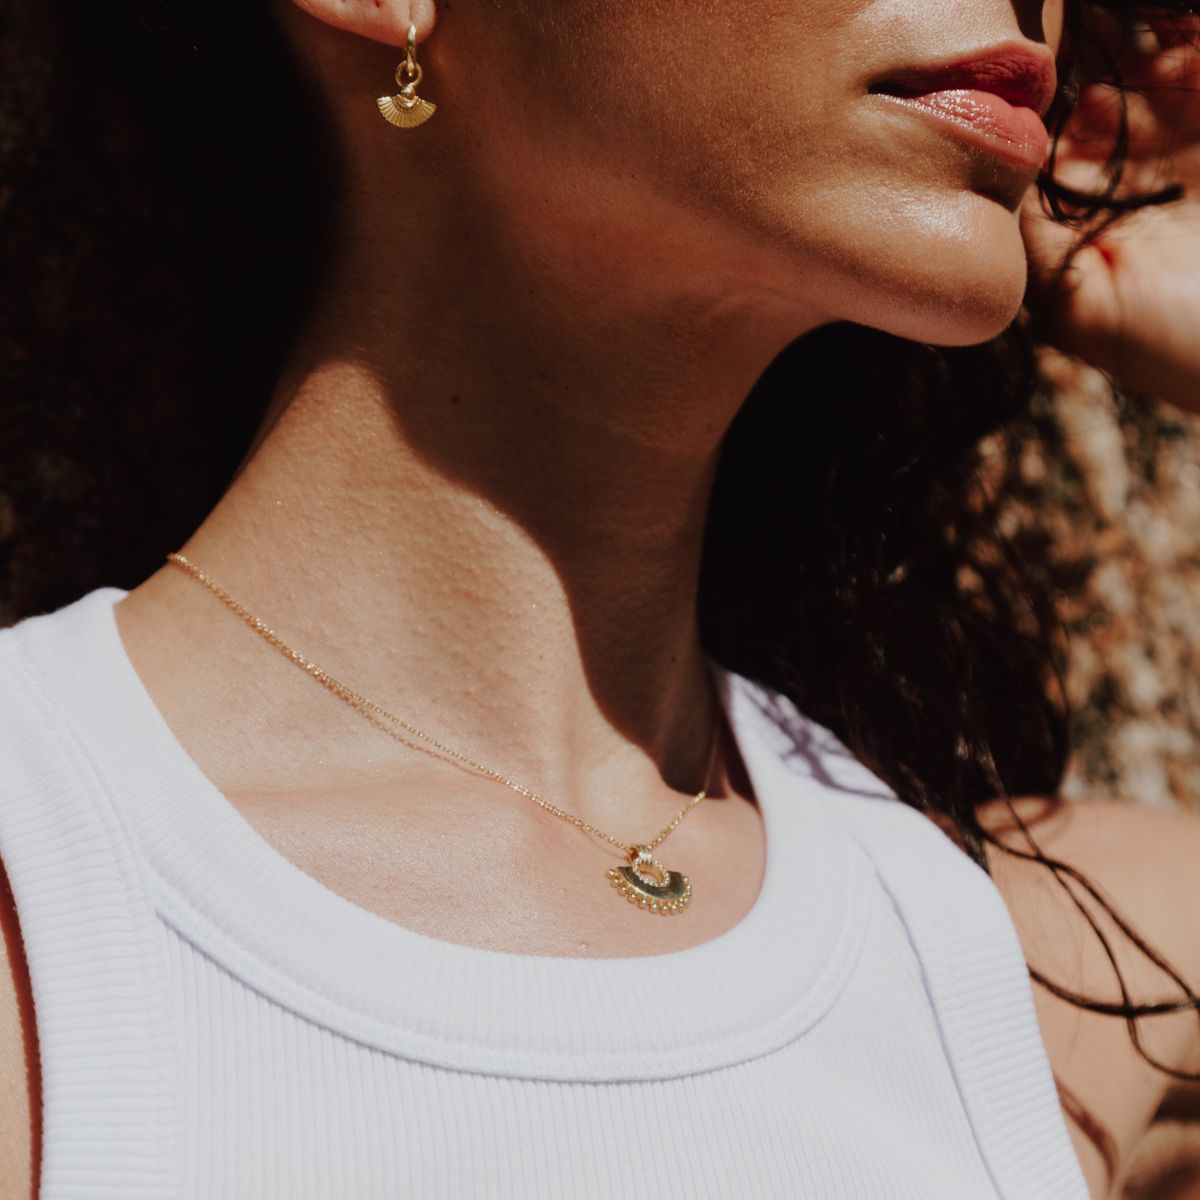 a woman wearing fan shaped necklace and earrings